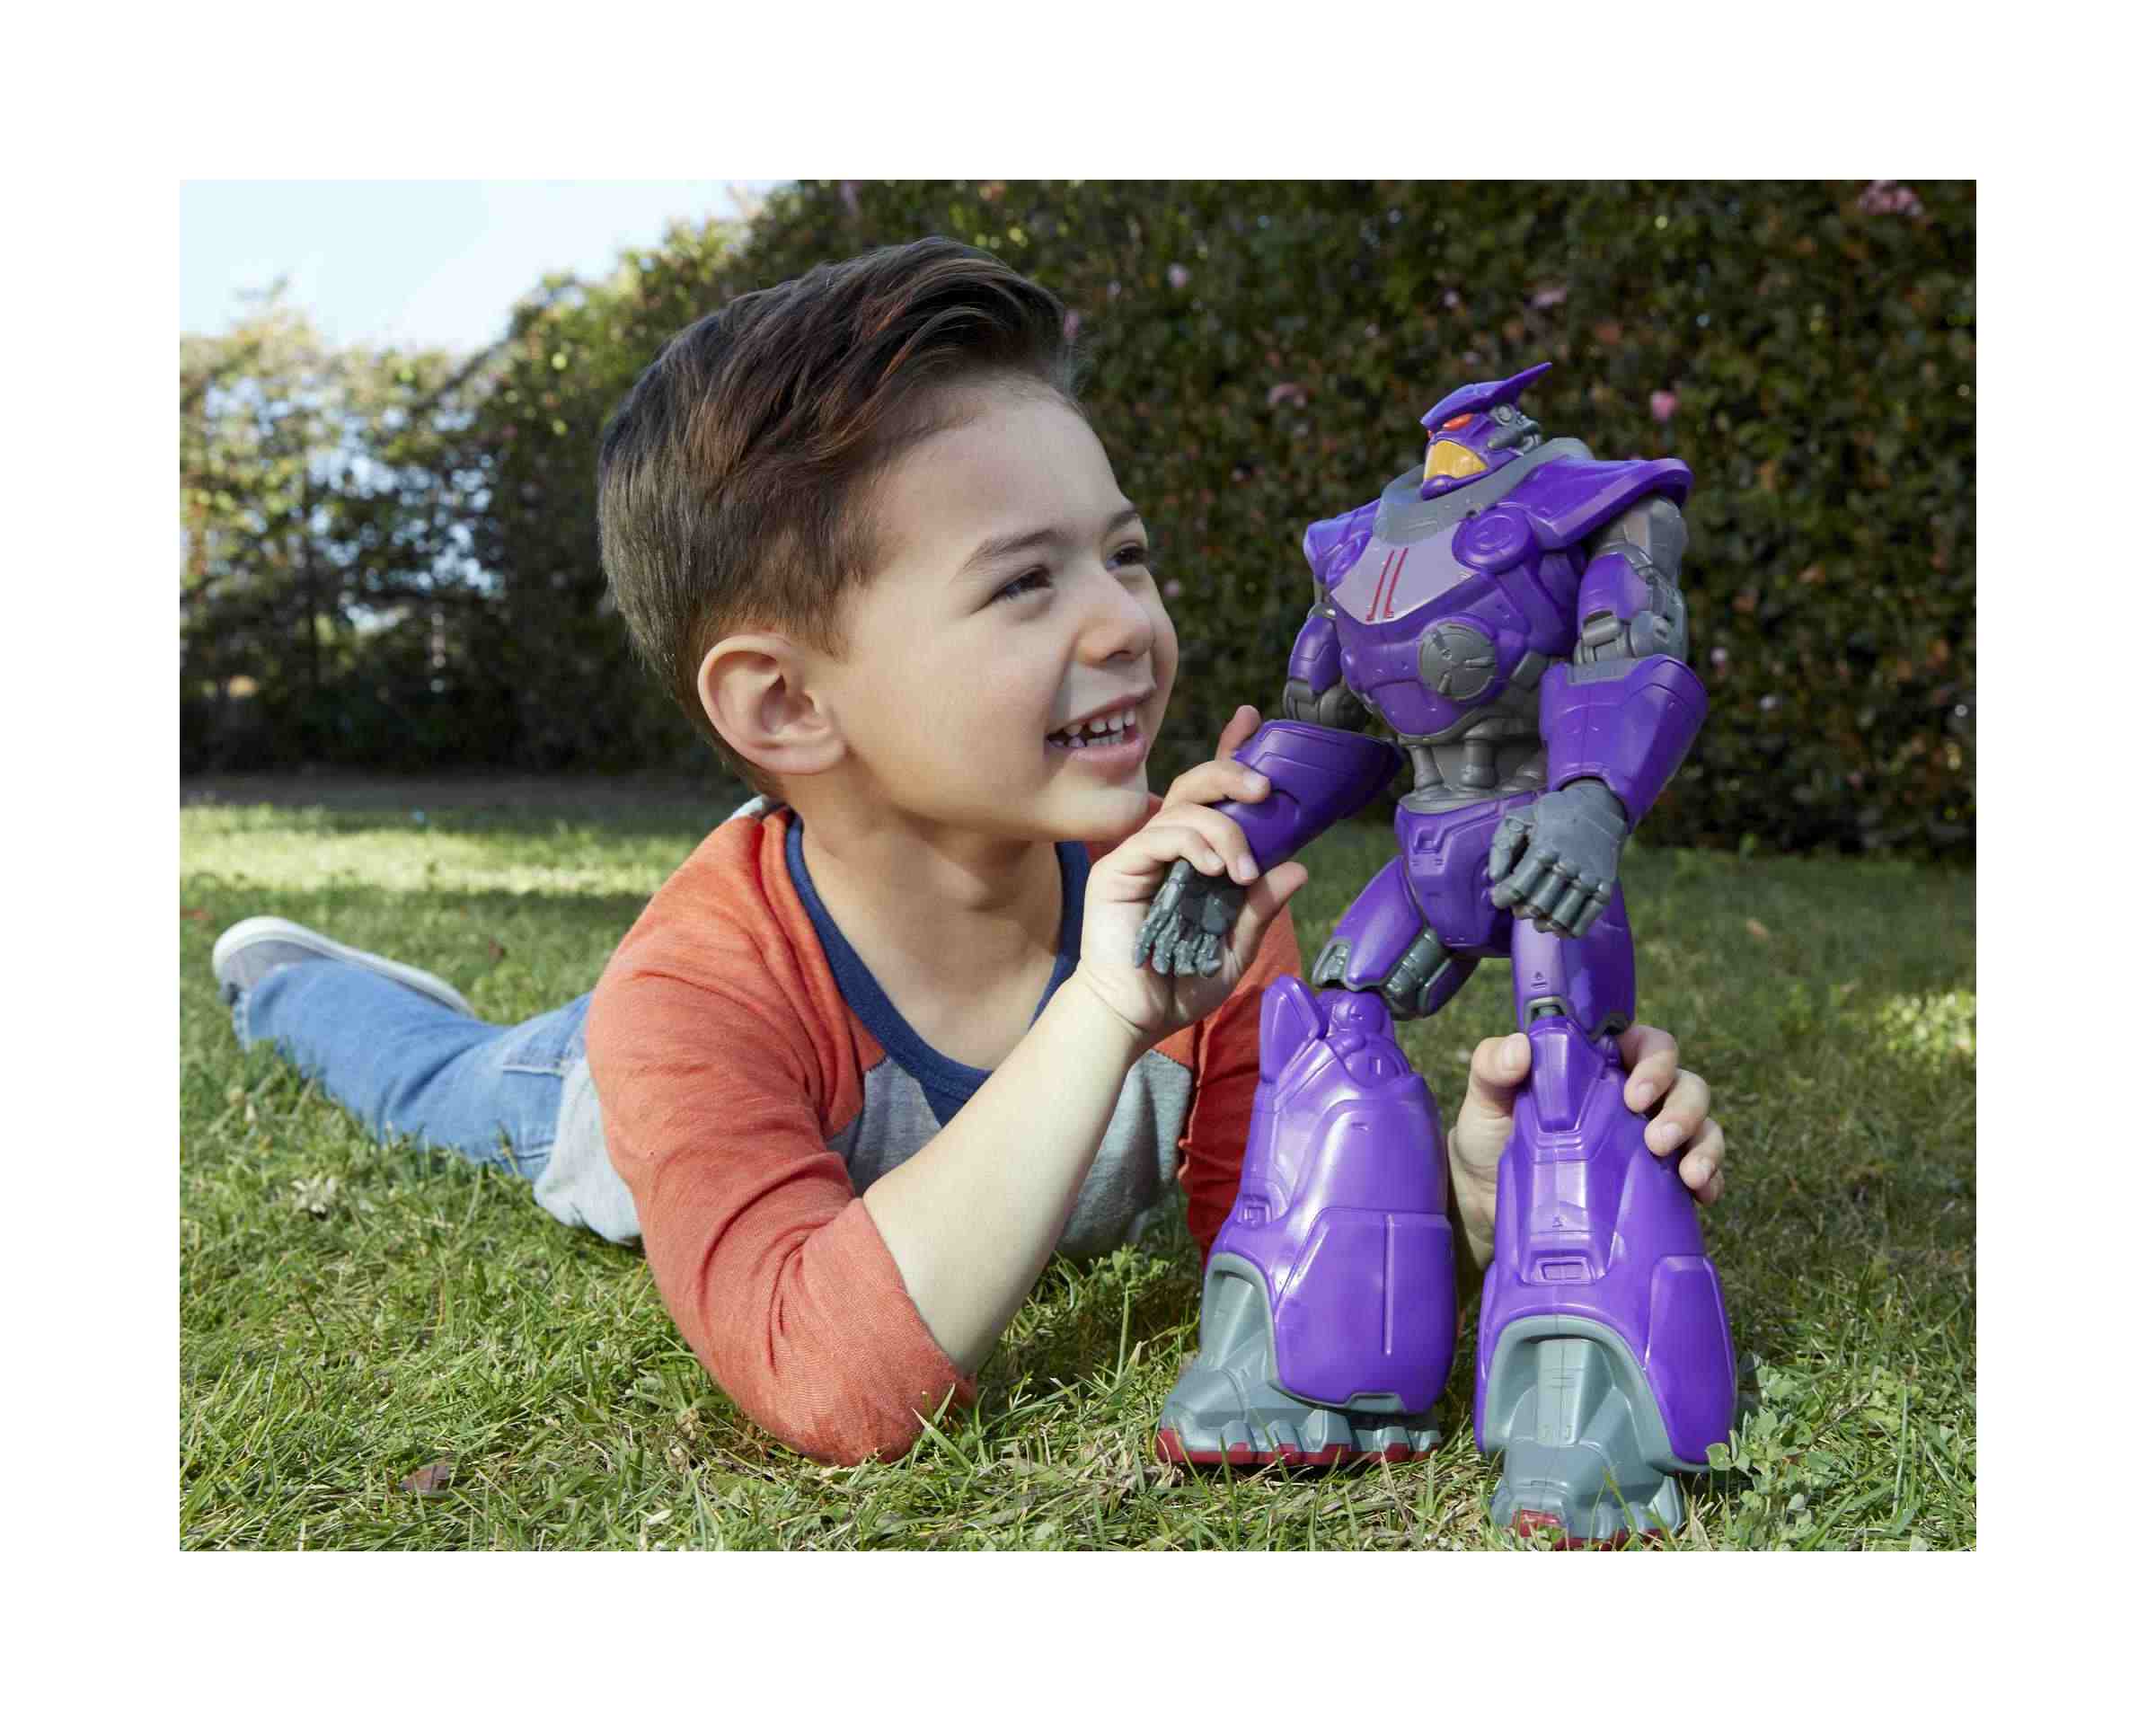 Disney pixar lightyear - zurg personaggio grande (30 cm) , giocattolo per bambini 3+ anni, hhj75 - Lightyear